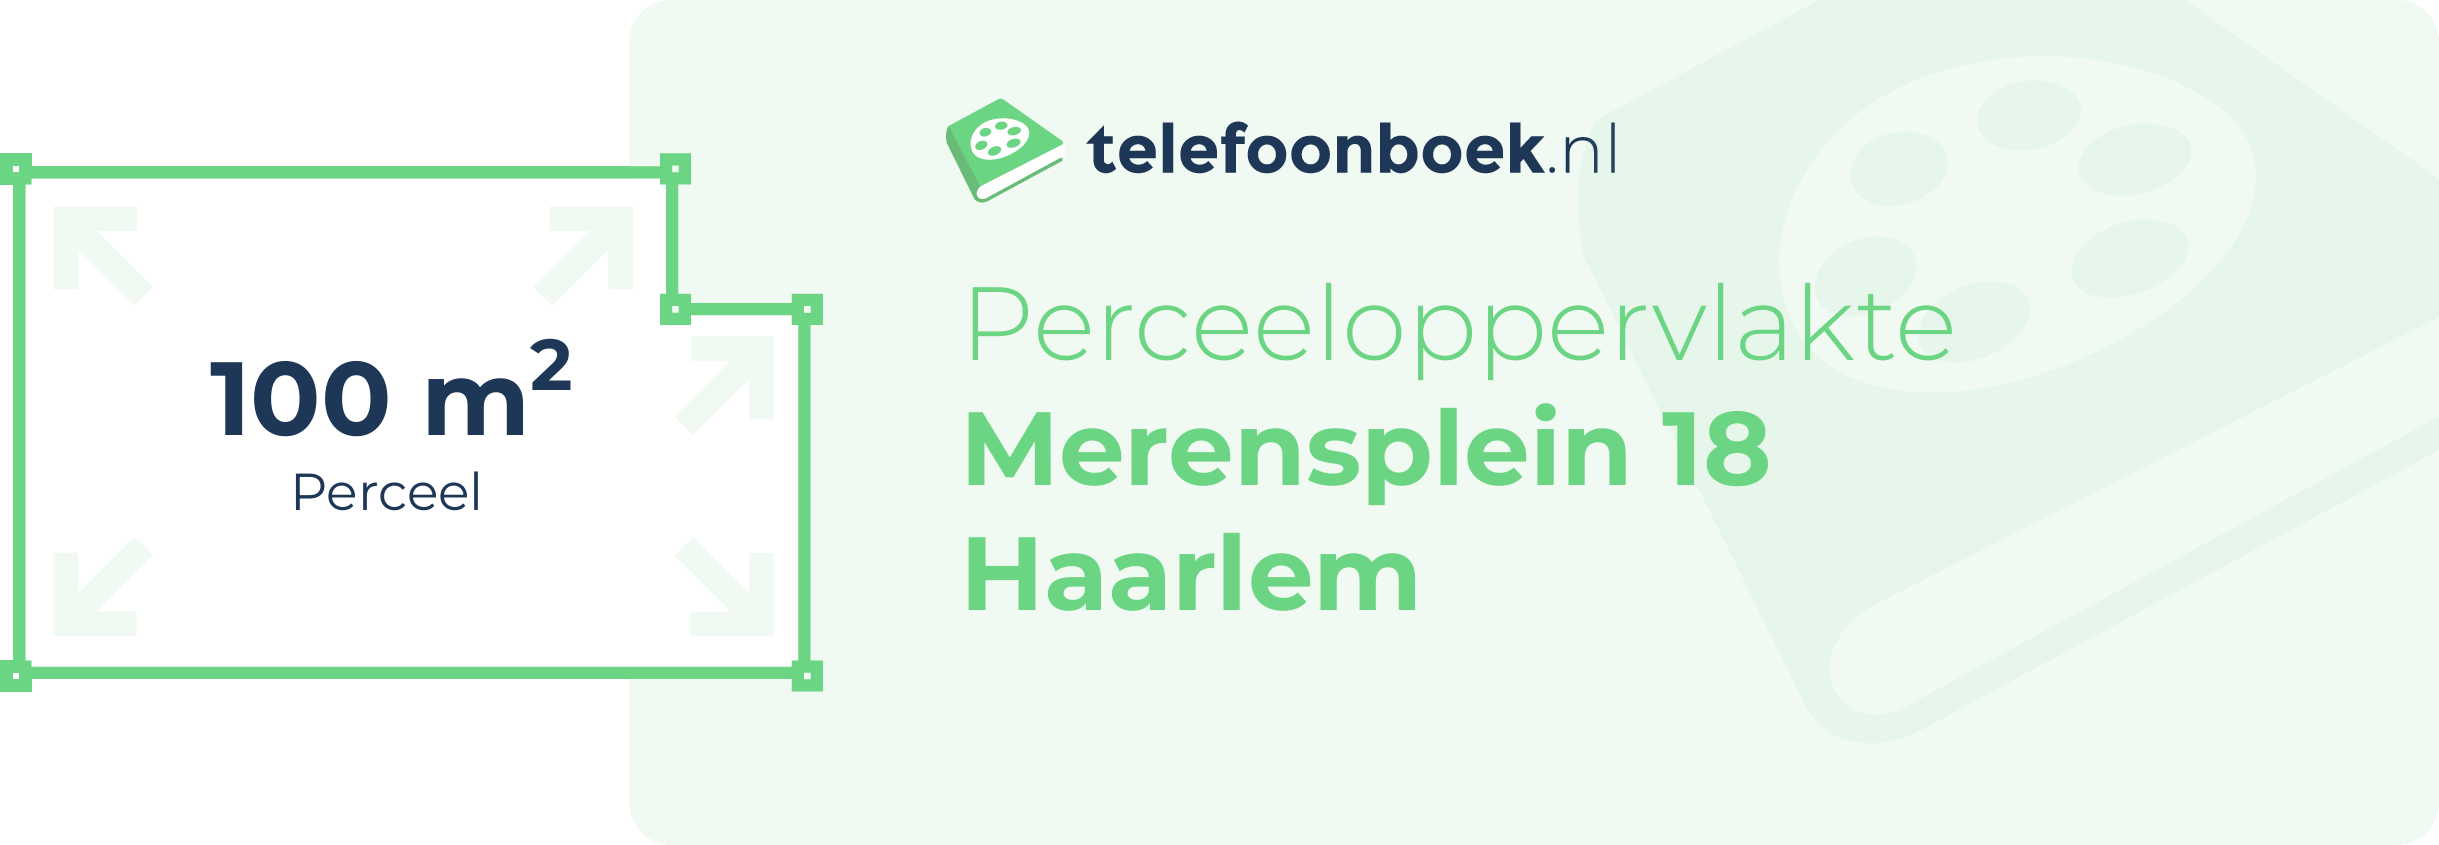 Perceeloppervlakte Merensplein 18 Haarlem